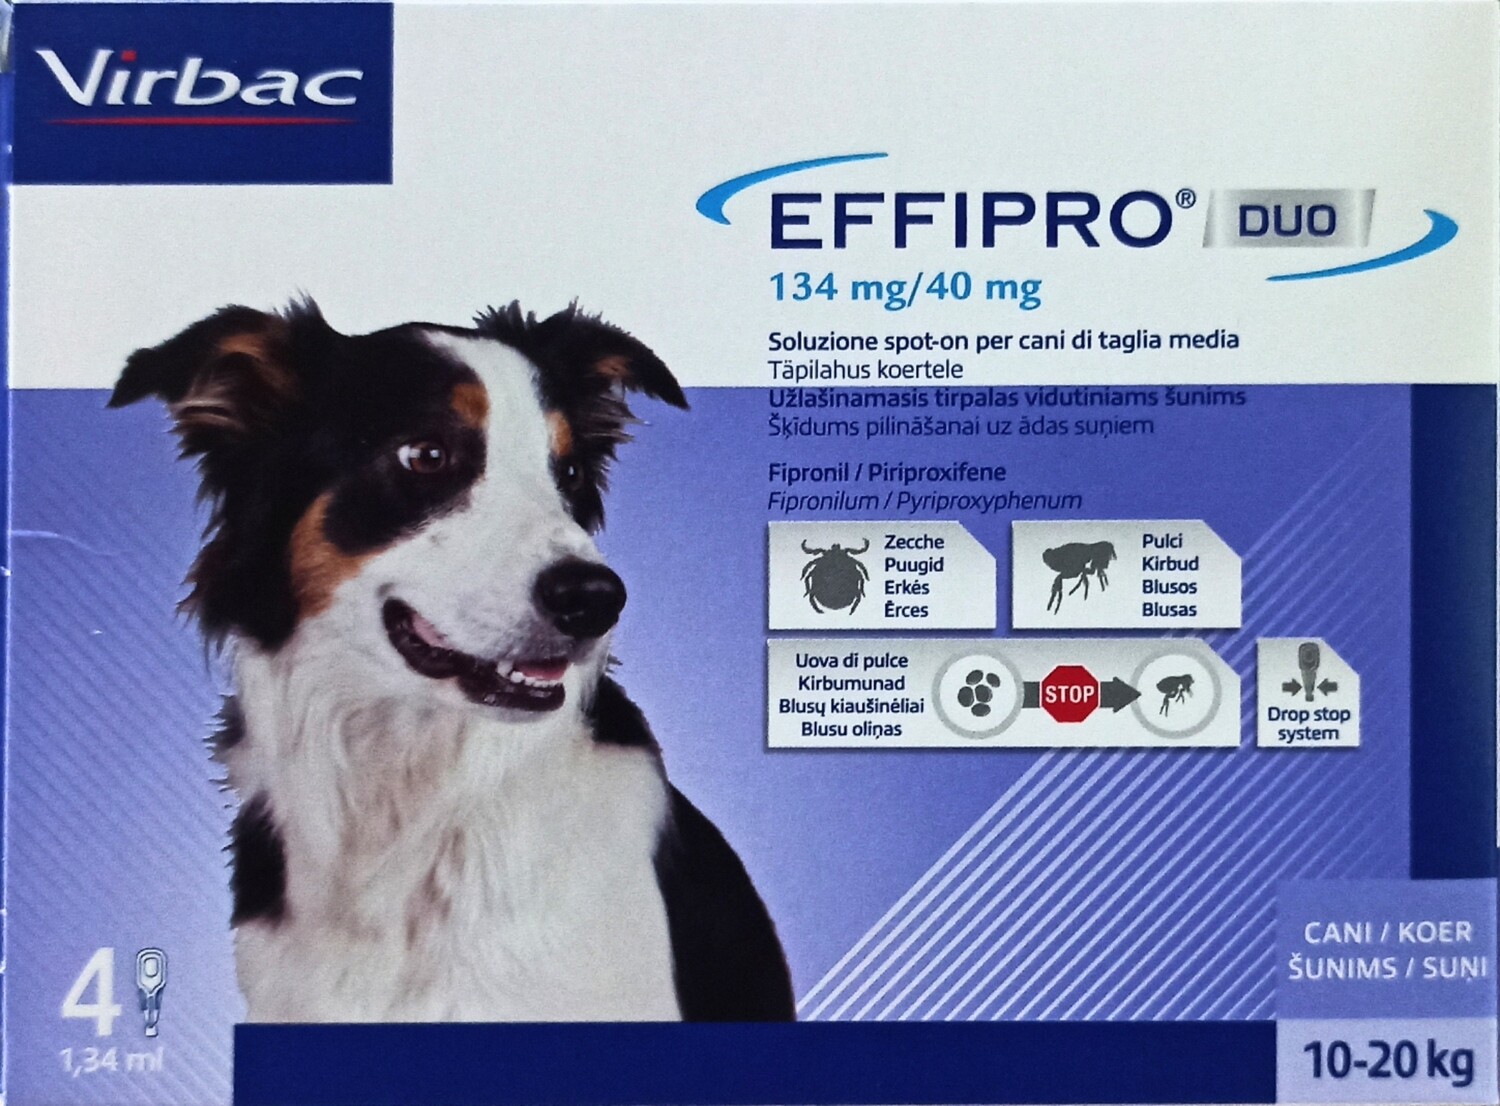 Effipro Duo Antiparassitari - 4 Pip. Spot-On Per Cani di Kg 10-20